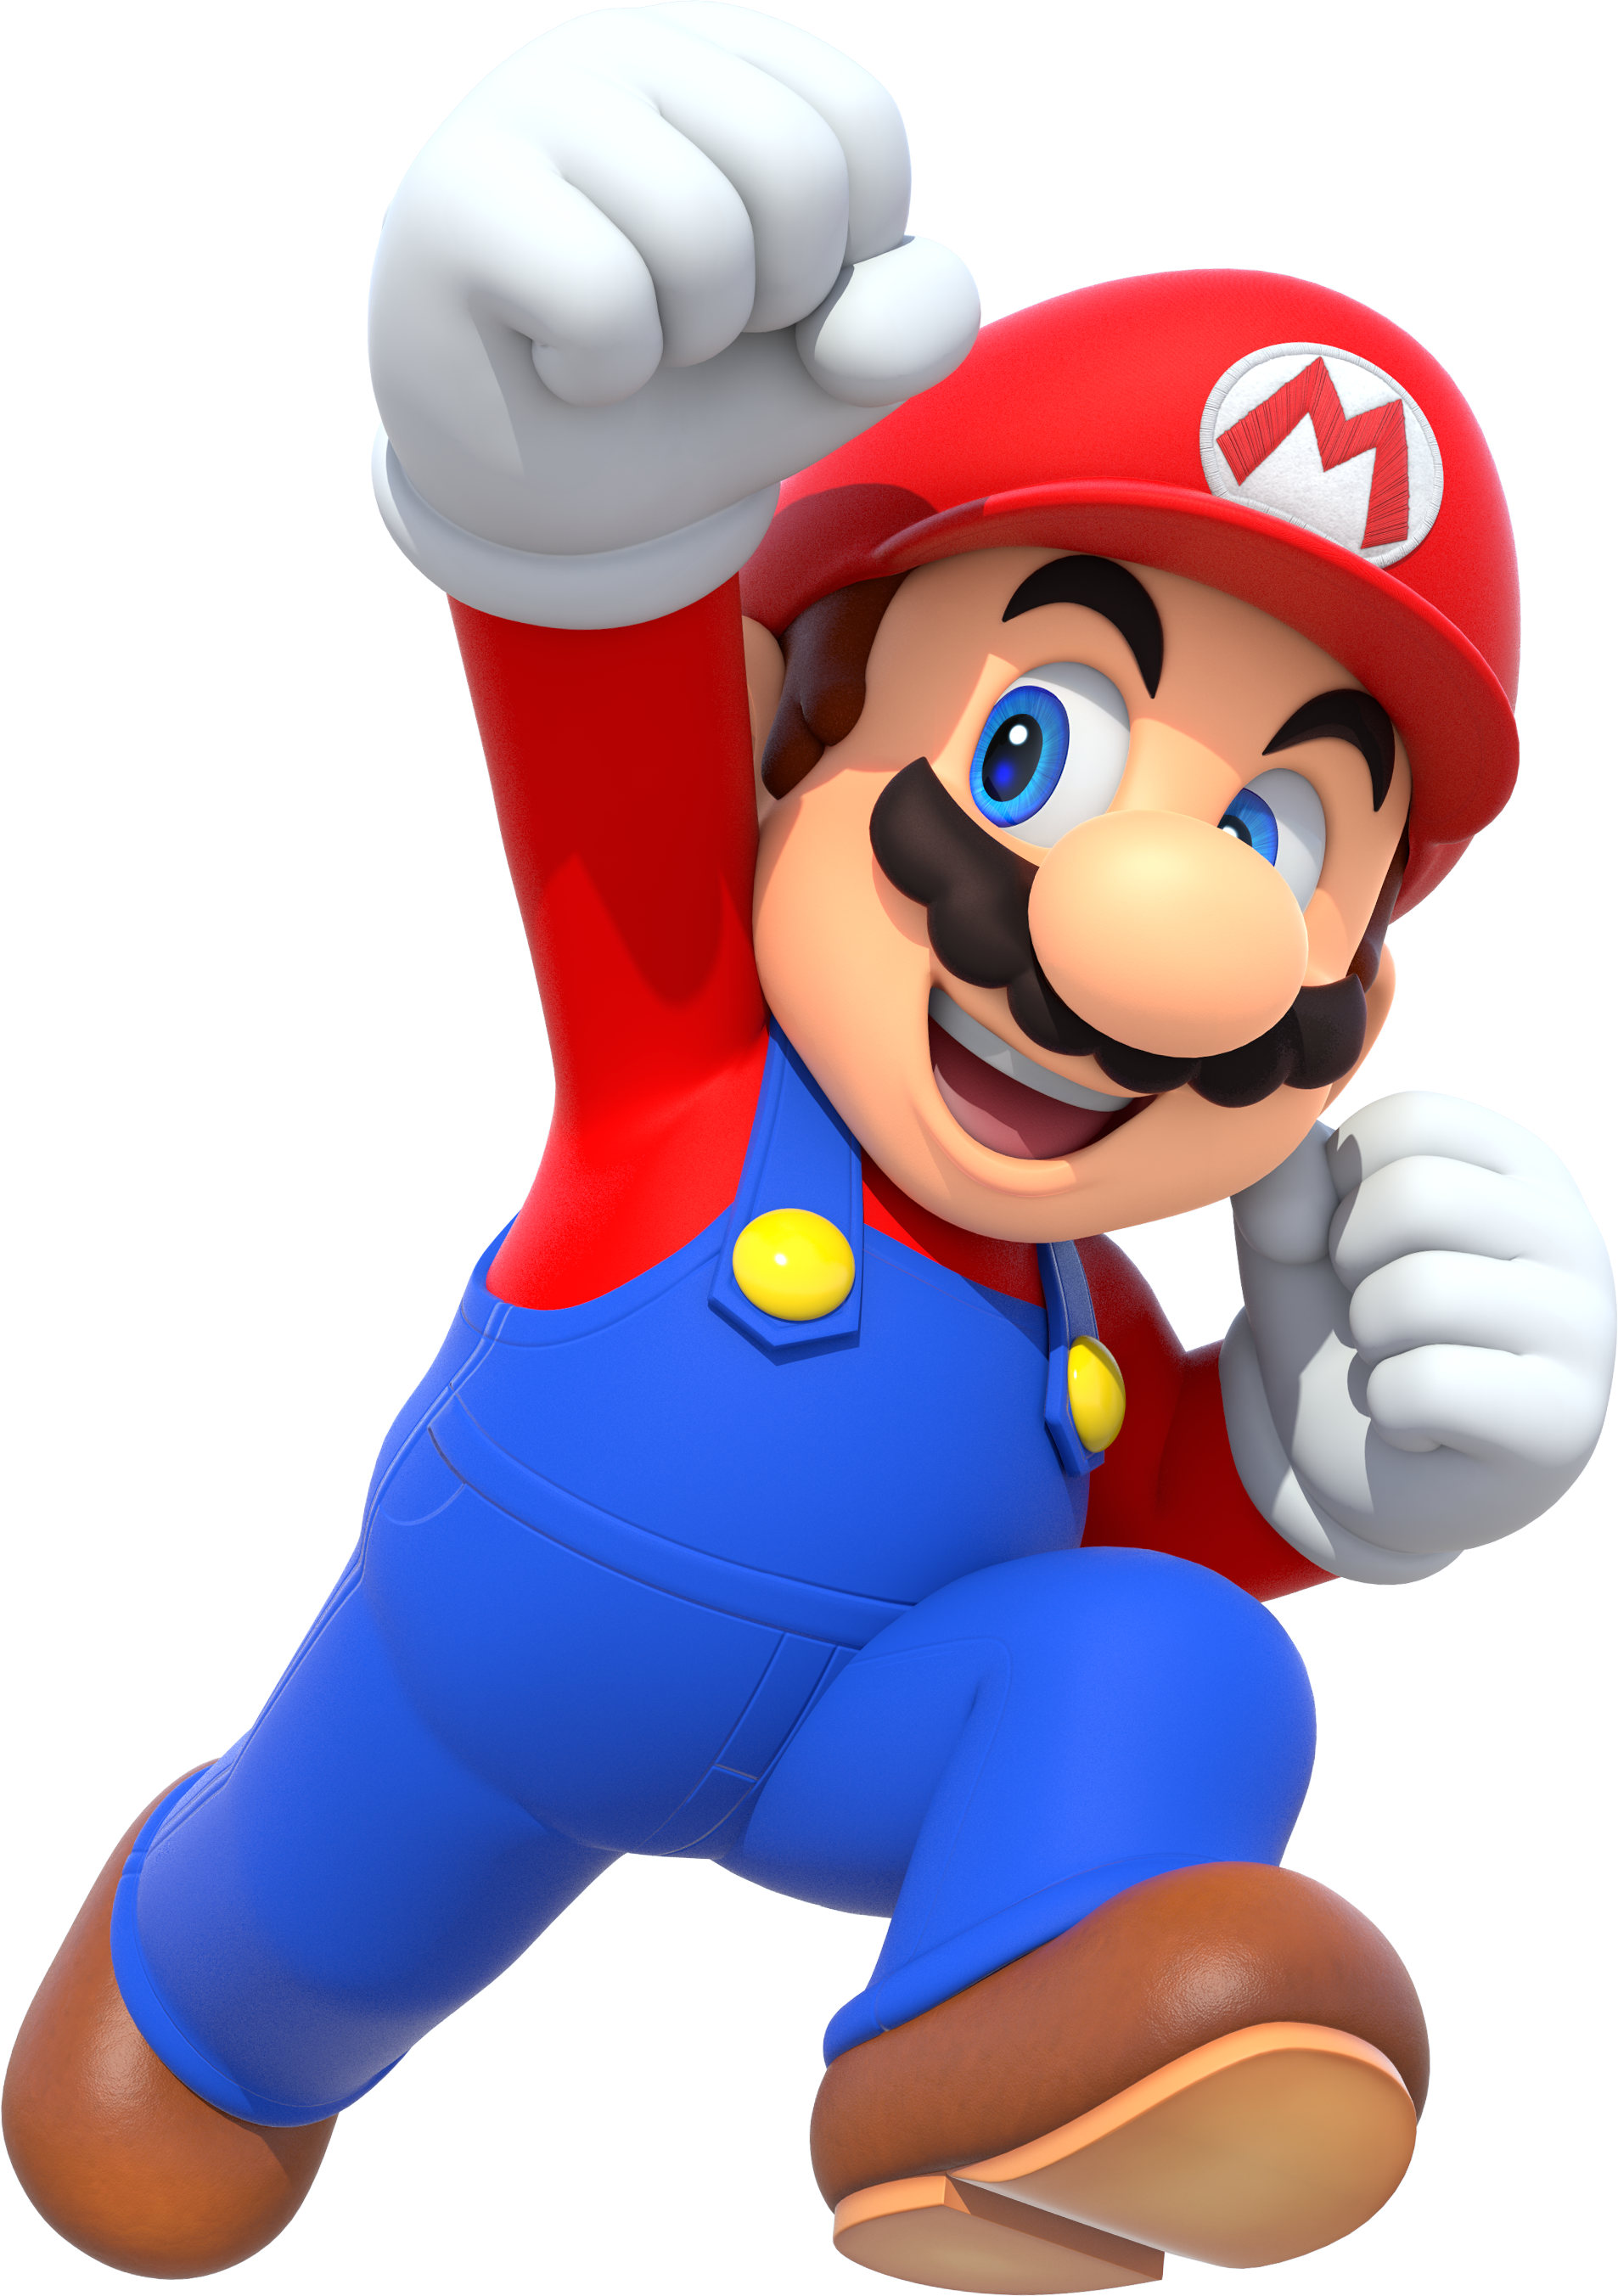 Mario Party - Super Mario Wiki, the Mario encyclopedia